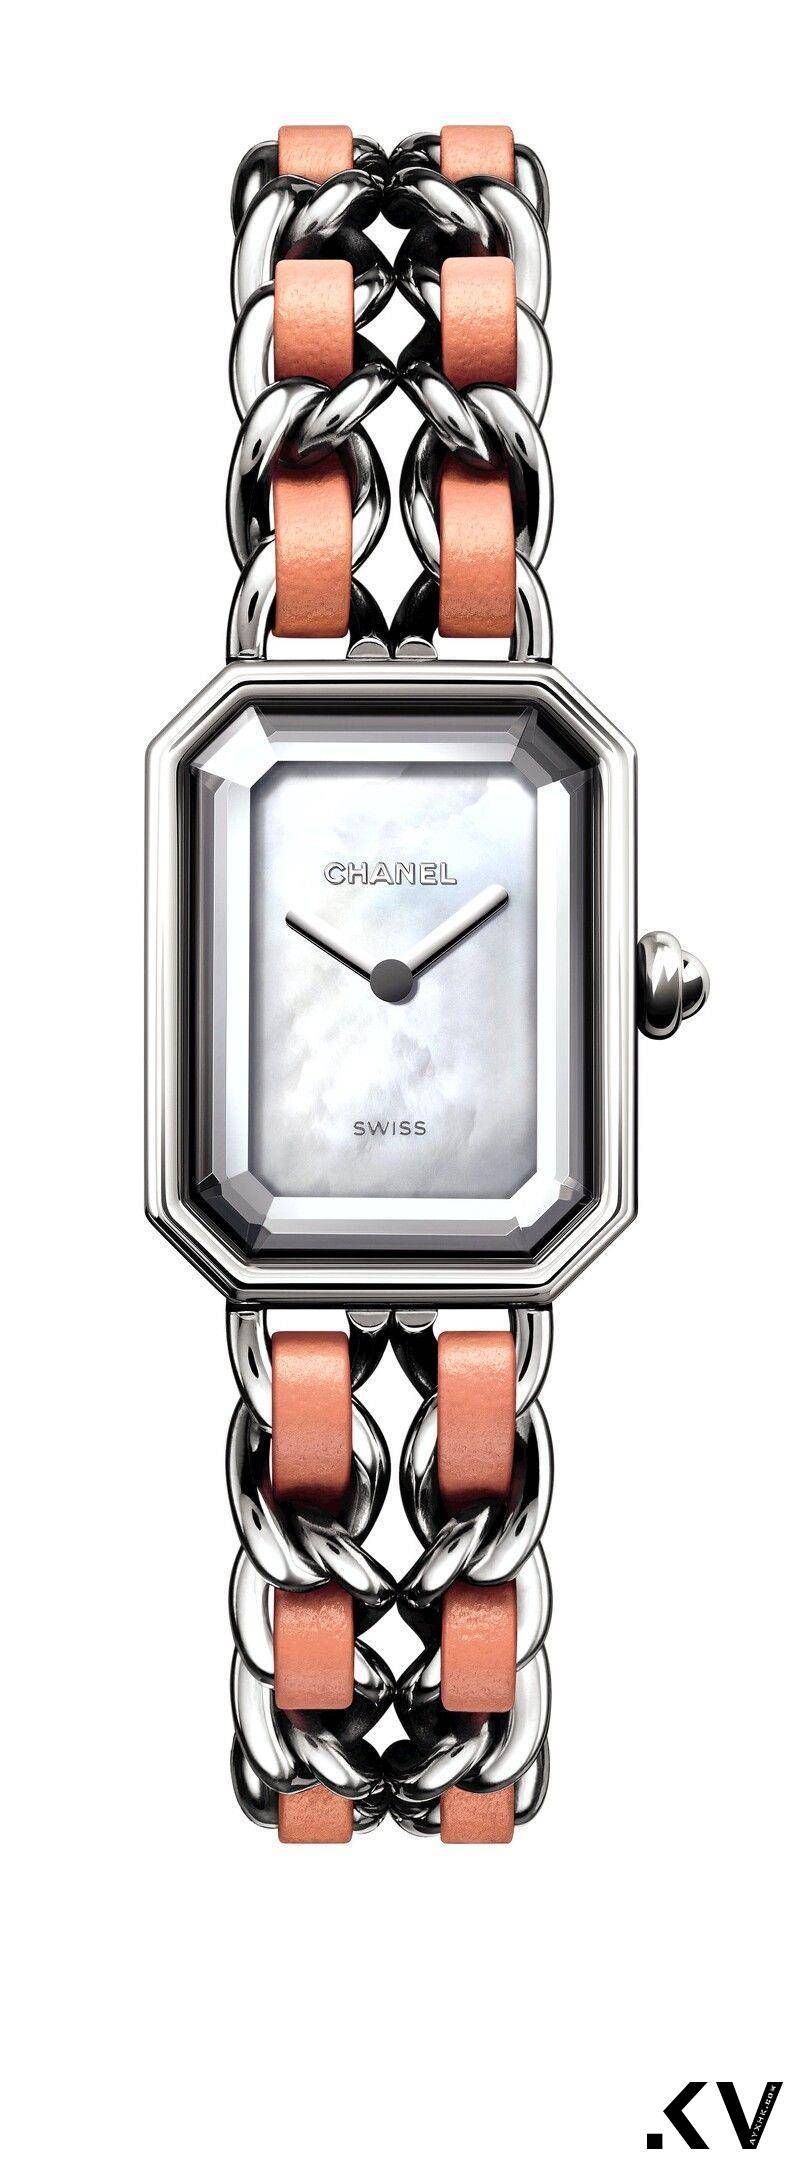 15款梦幻“粉红色手表”　雷恩葛斯林同款、Cartier男女戴都时髦 奢侈品牌 图8张